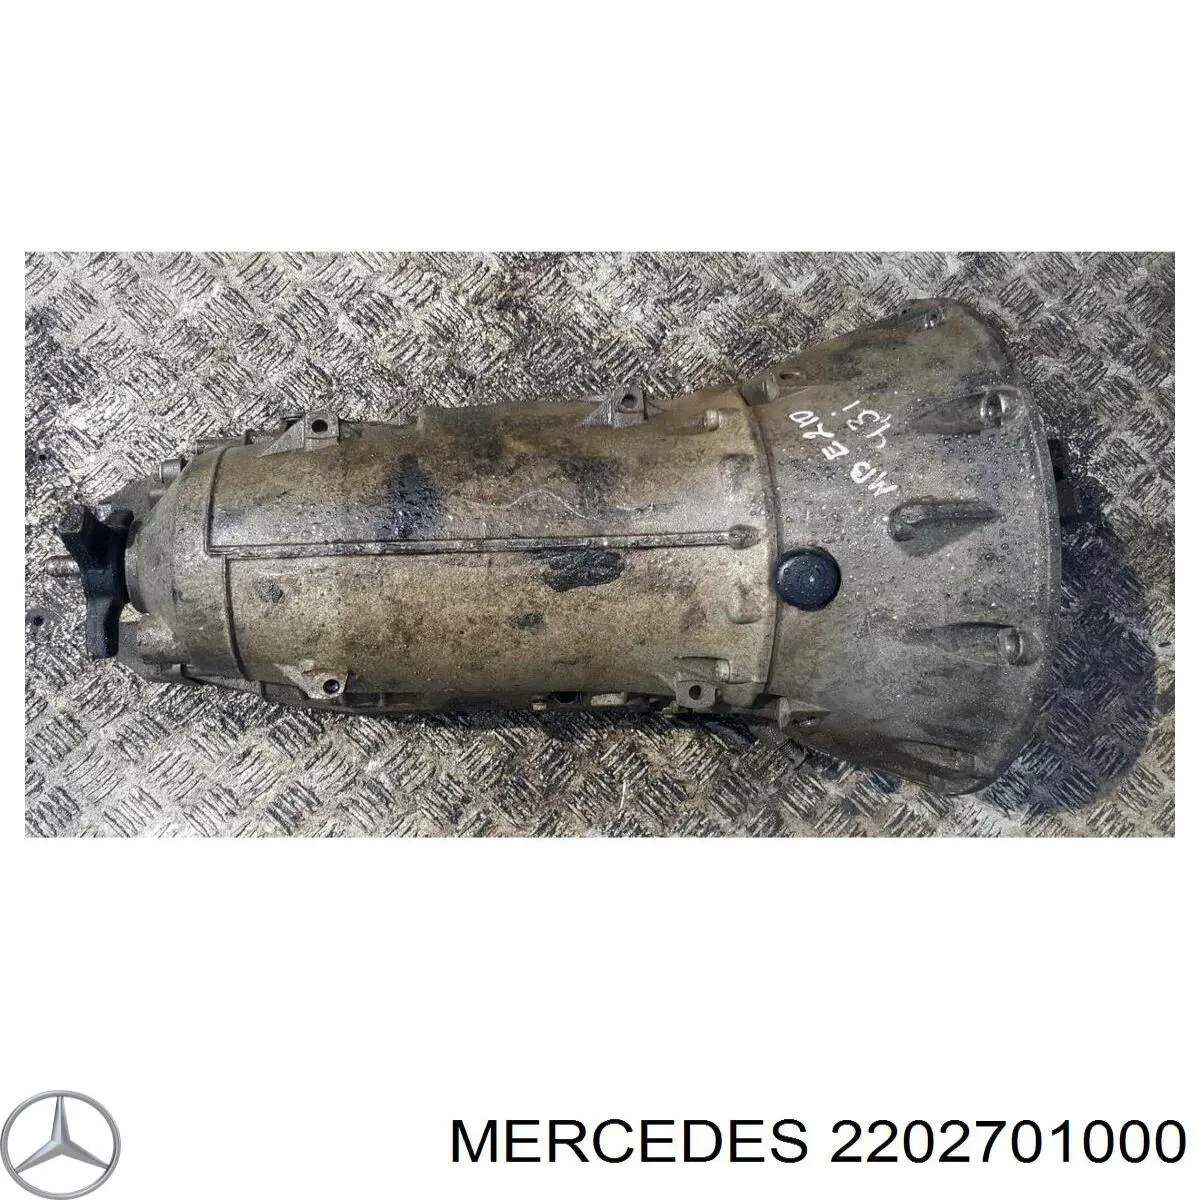 A2202701000 Mercedes акпп в сборе (автоматическая коробка передач)